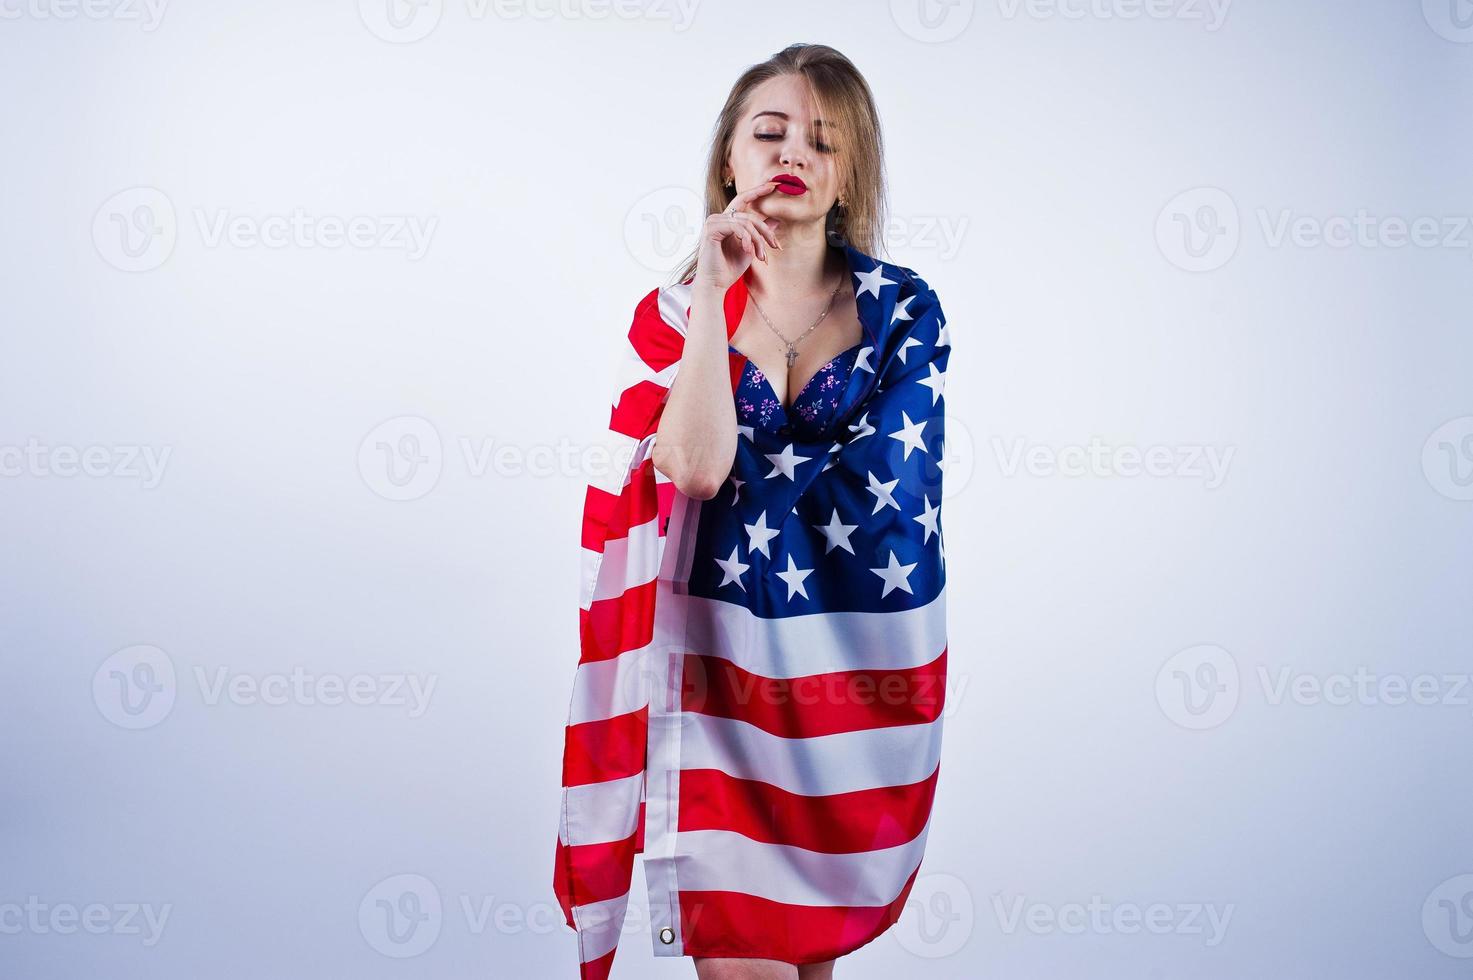 süßes Mädchen im BH mit amerikanischer Flagge isoliert auf weißem Hintergrund. foto